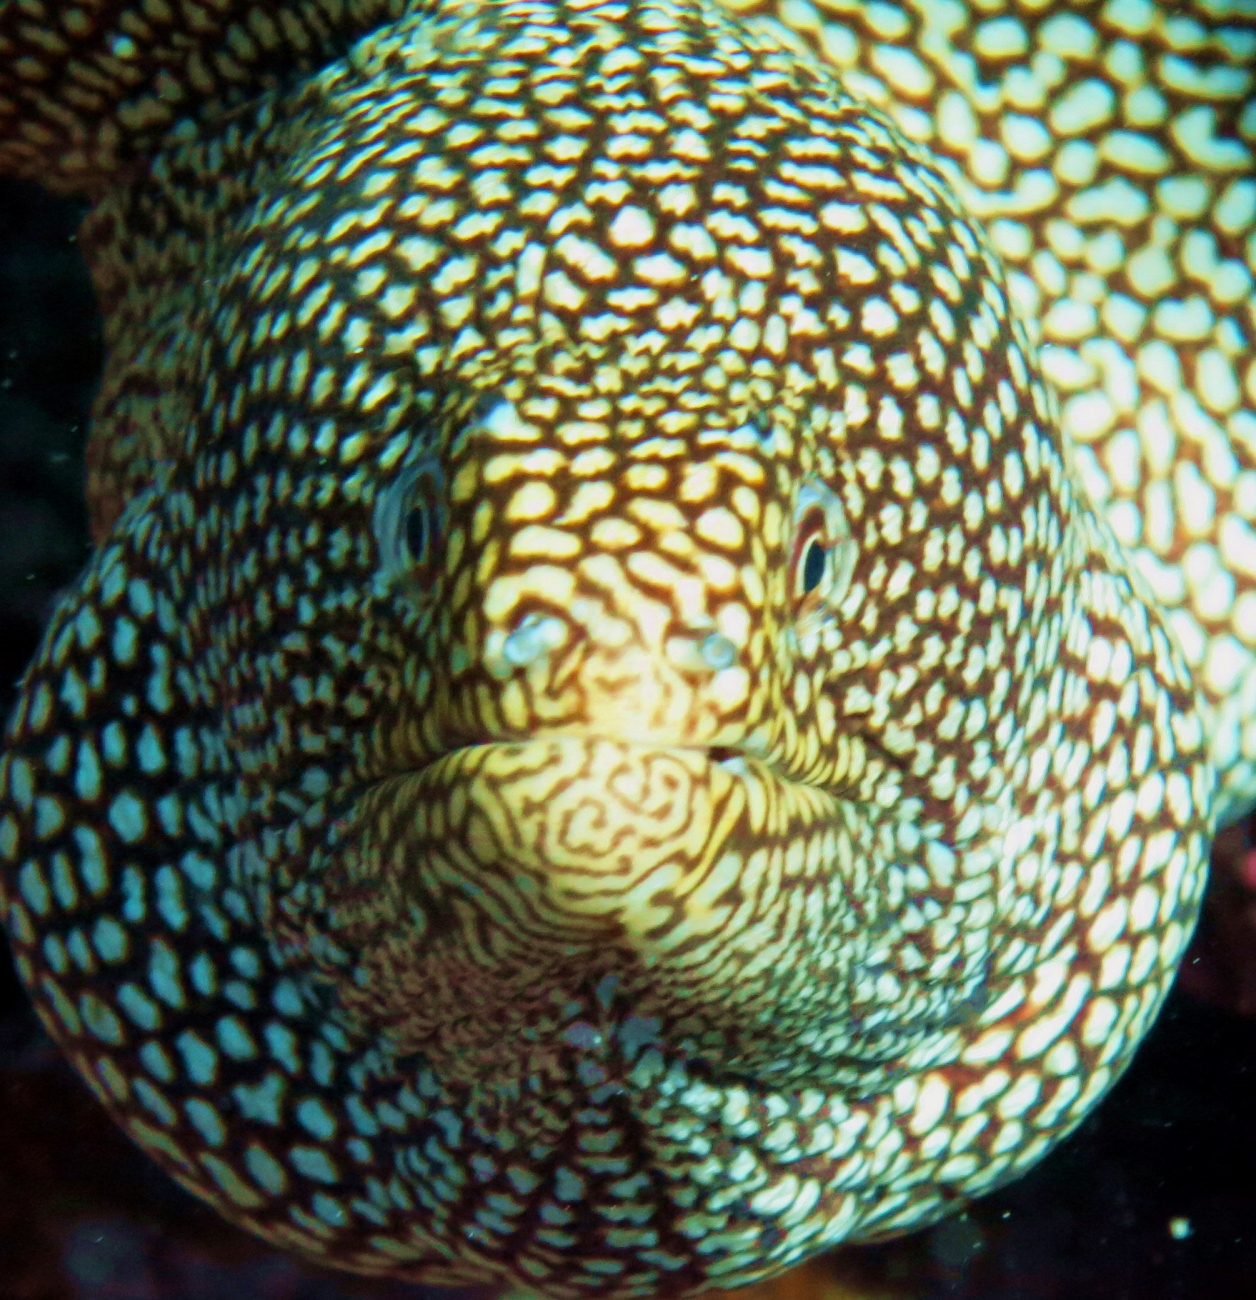 Whitemouth moray (Gymnothorax meleagris)